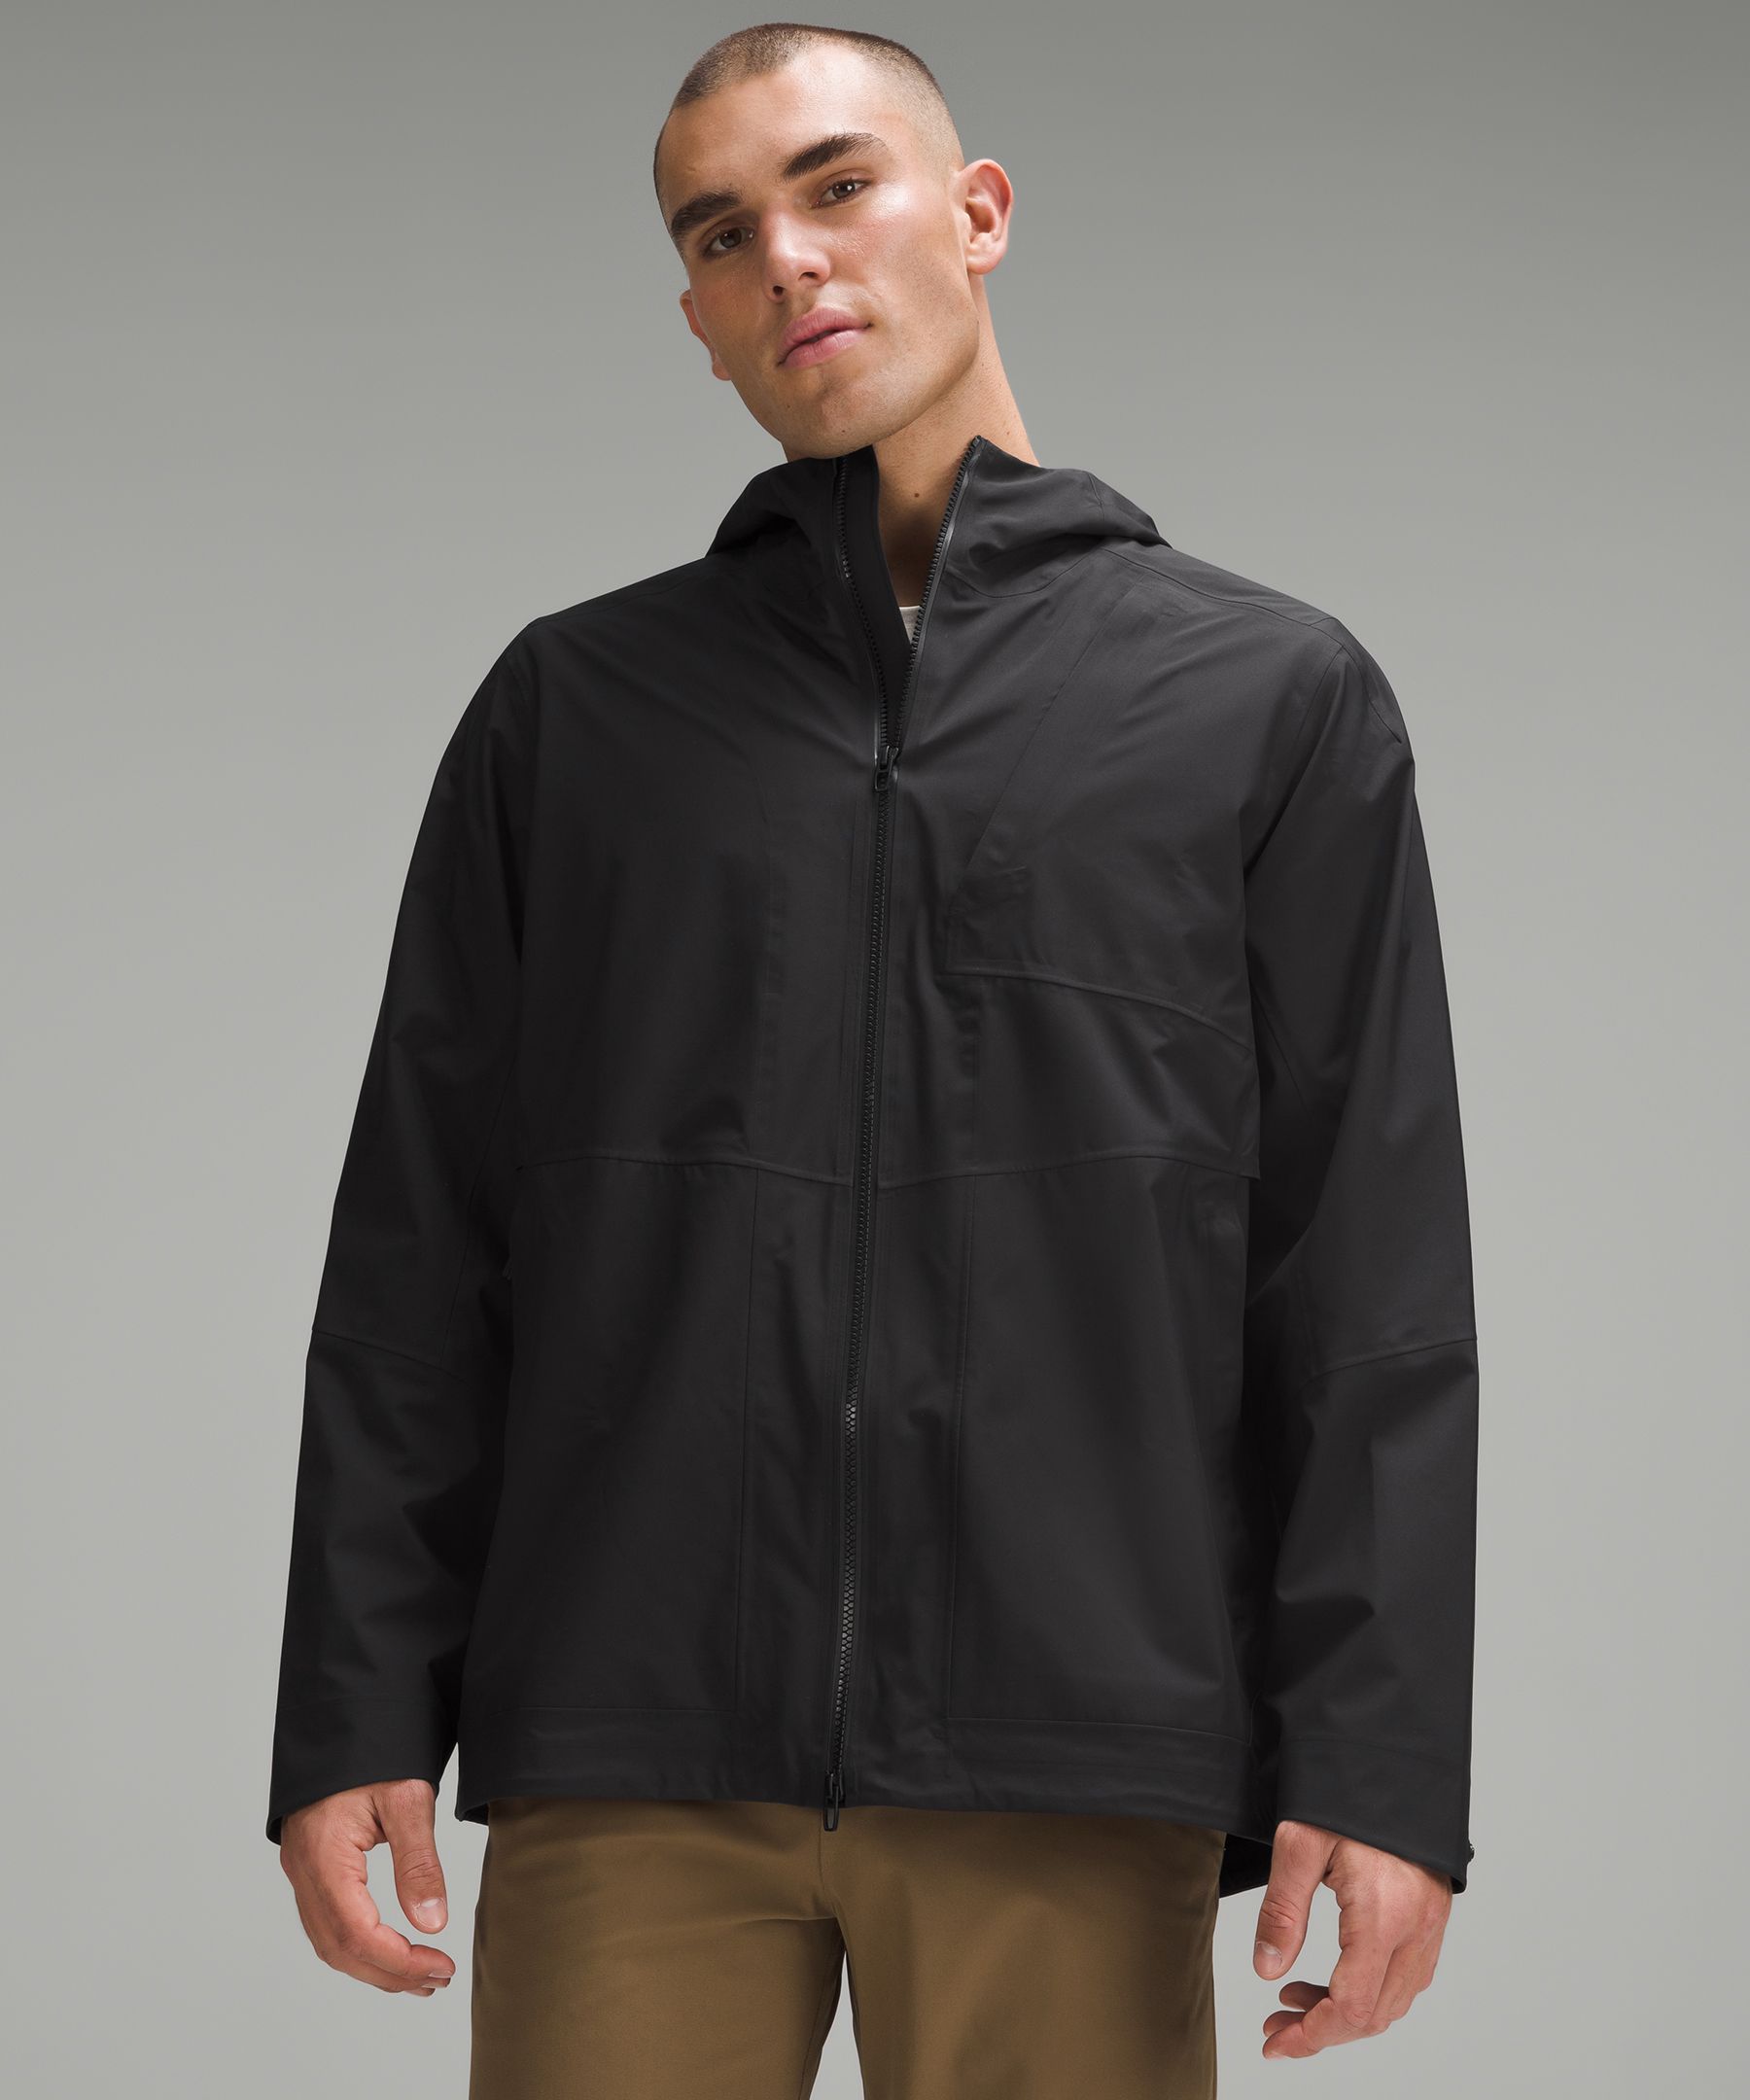 lululemon athletica, Jackets & Coats, Lululemon Black Grey Rain Jacket  Size 8